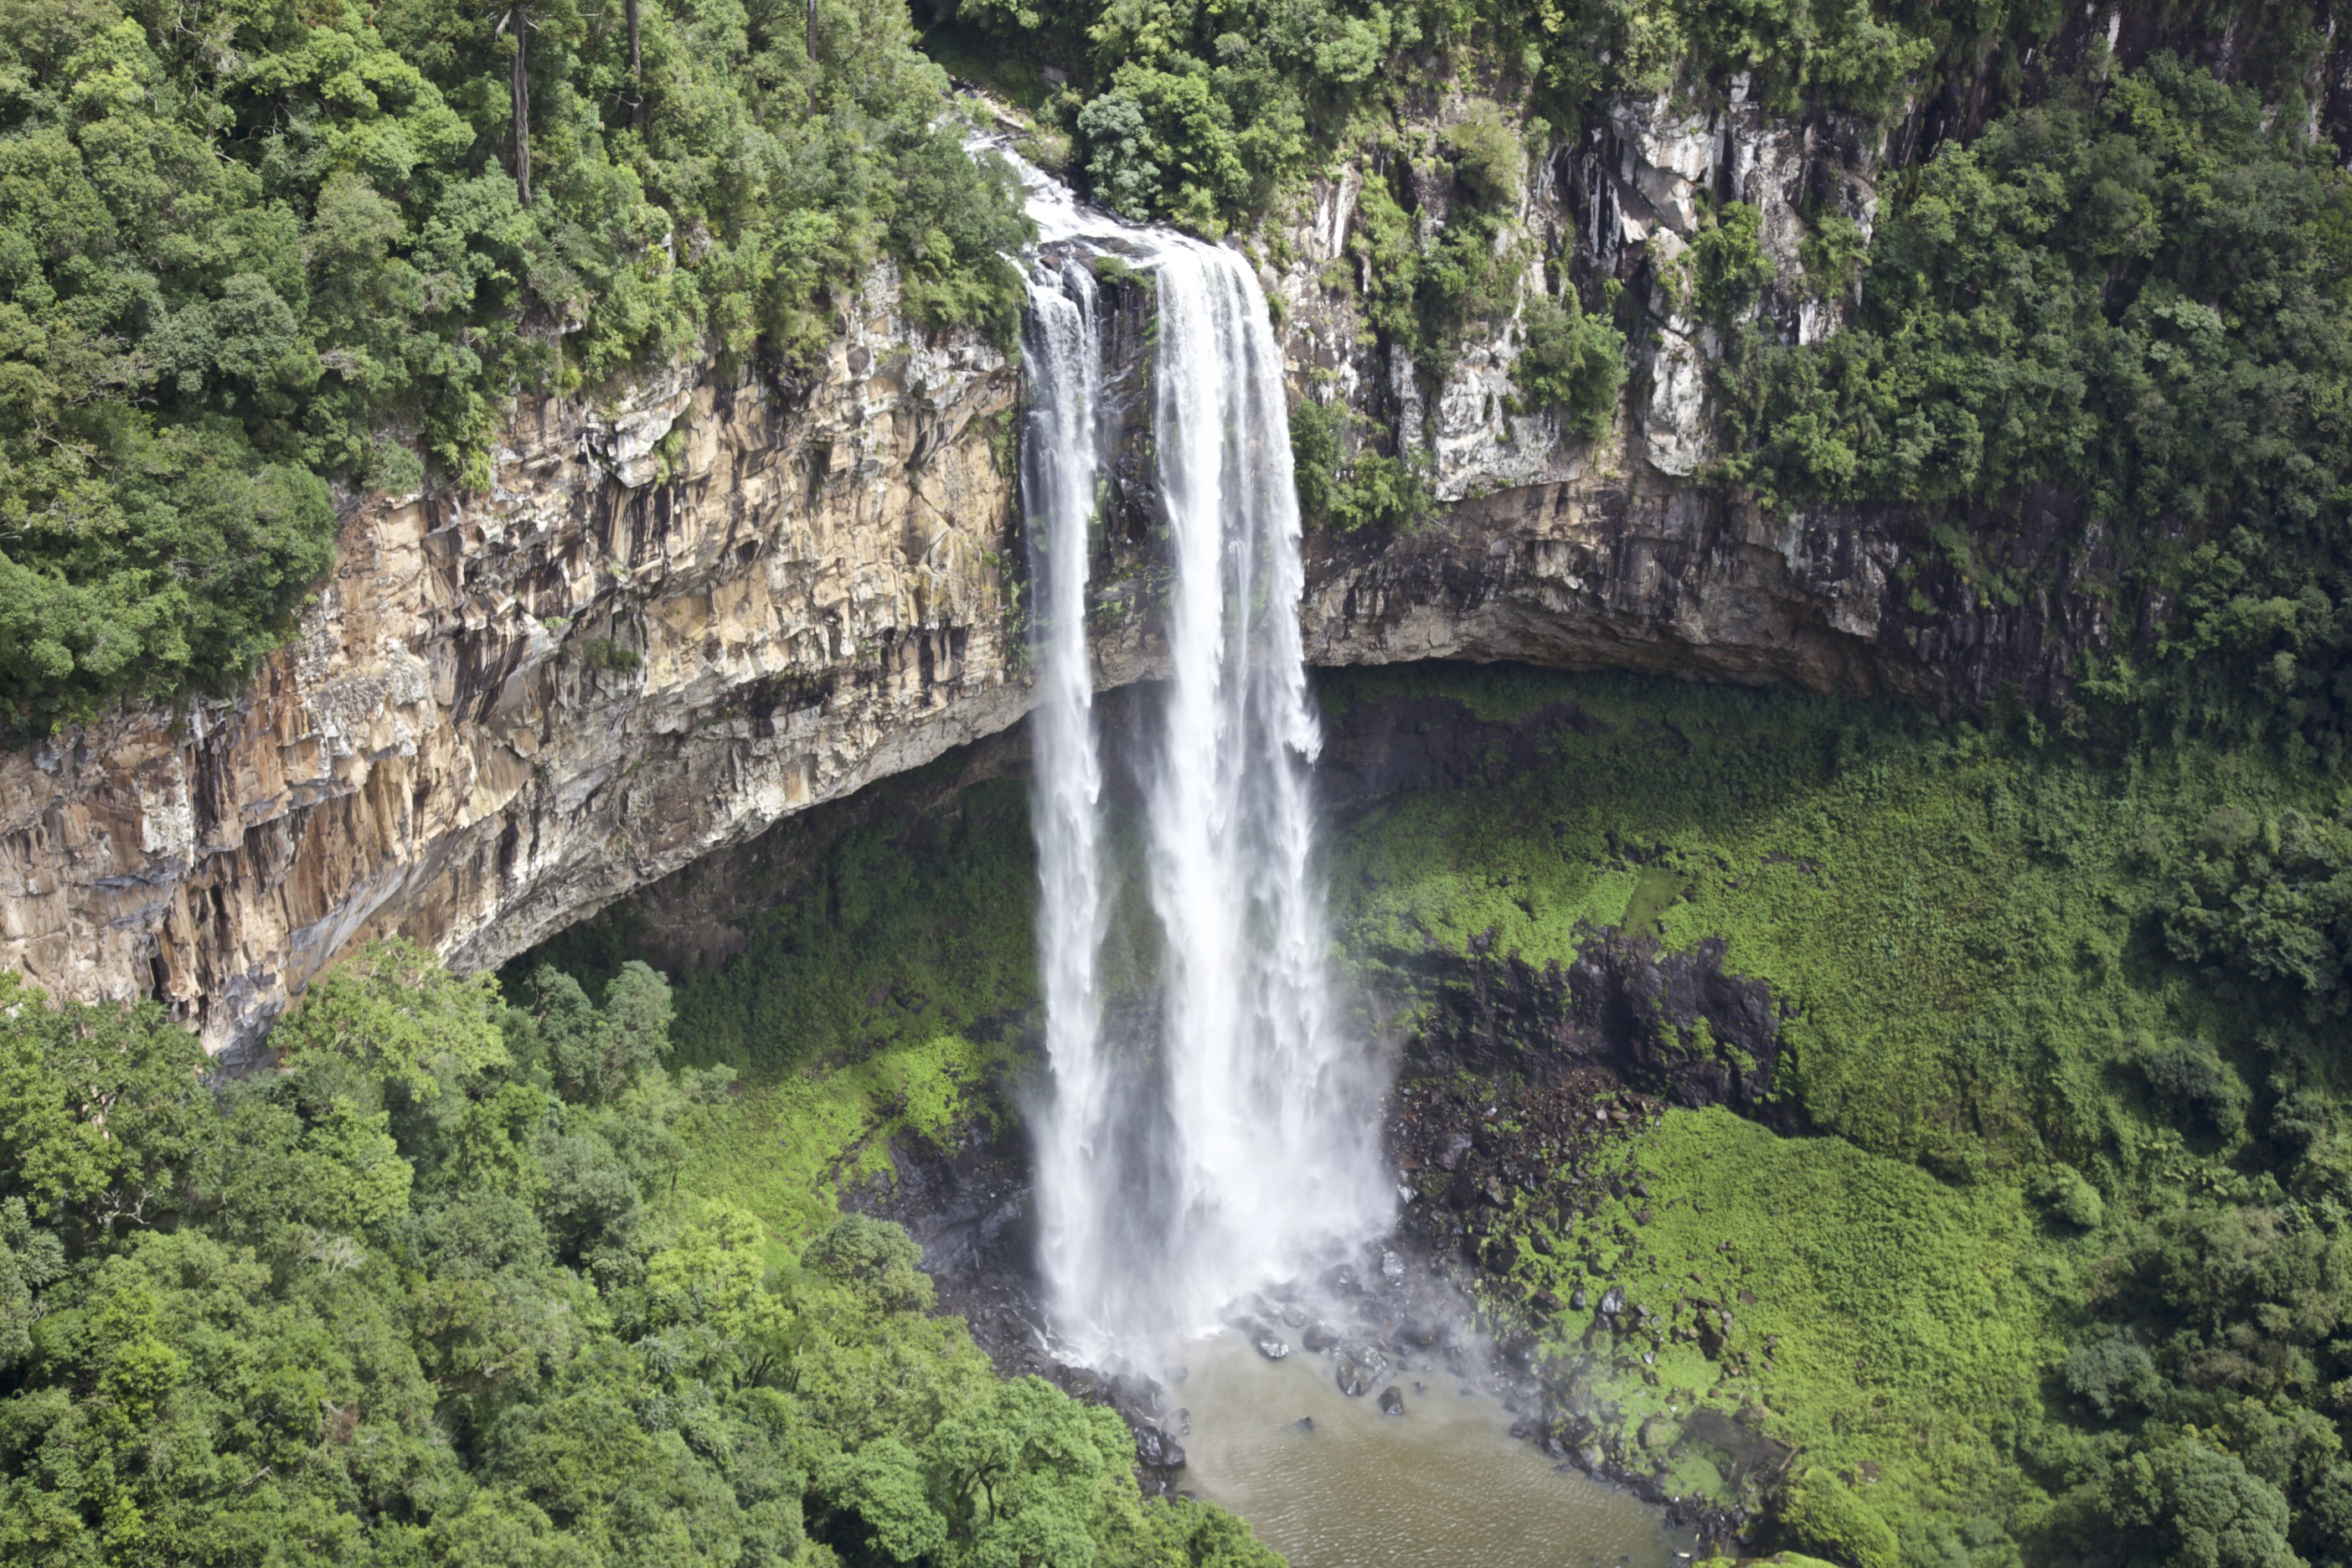 Скачать обои бесплатно Природа, Водопады, Водопад, Бразилия, Земля/природа, Каракол Фолс картинка на рабочий стол ПК